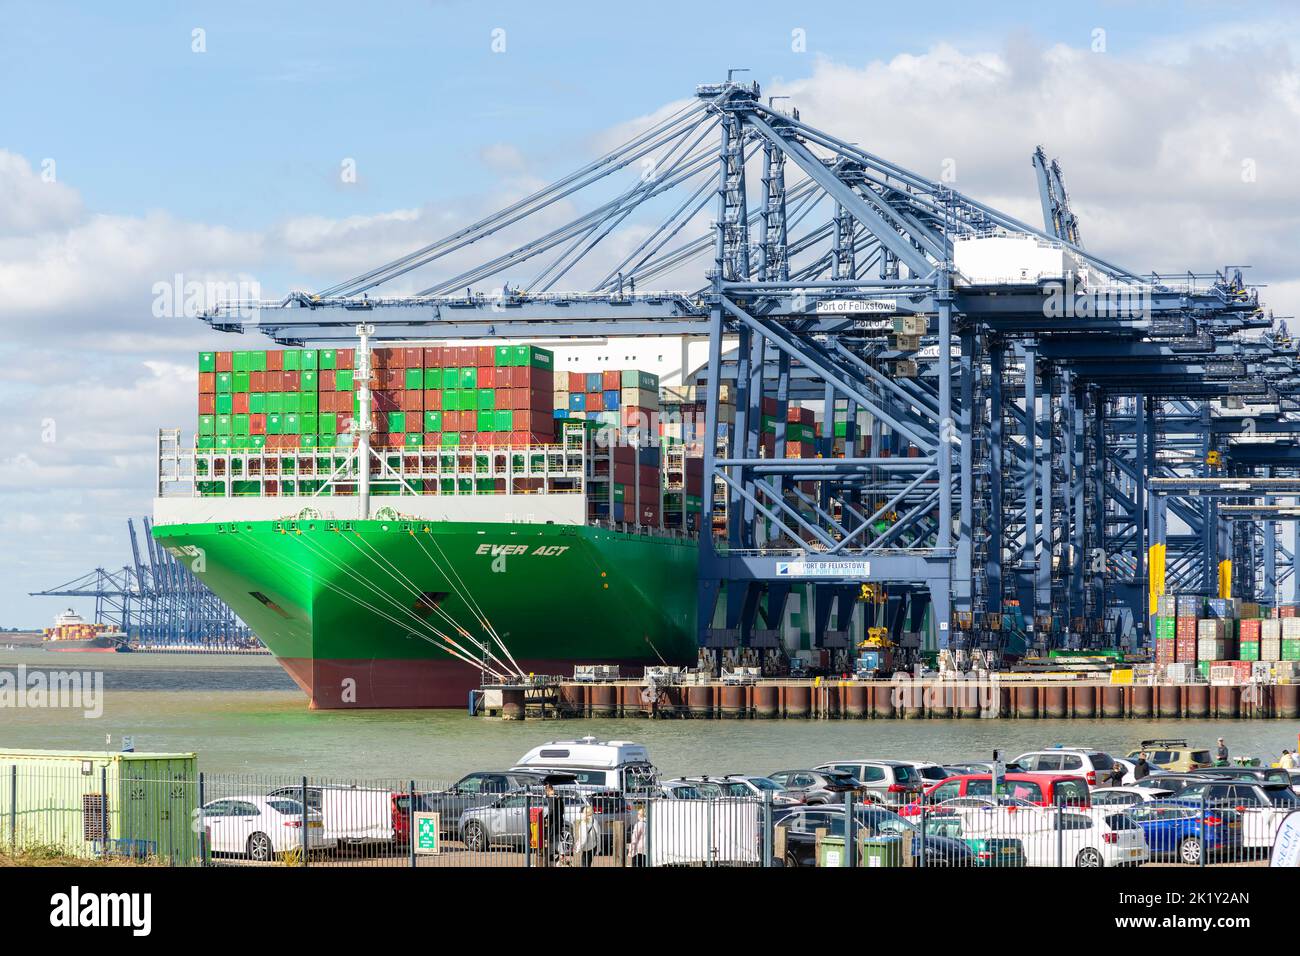 Evergreen even ACT navire à conteneurs grues portiques sur quai, Port de Felixstowe, Suffolk, Angleterre, Royaume-Uni Banque D'Images